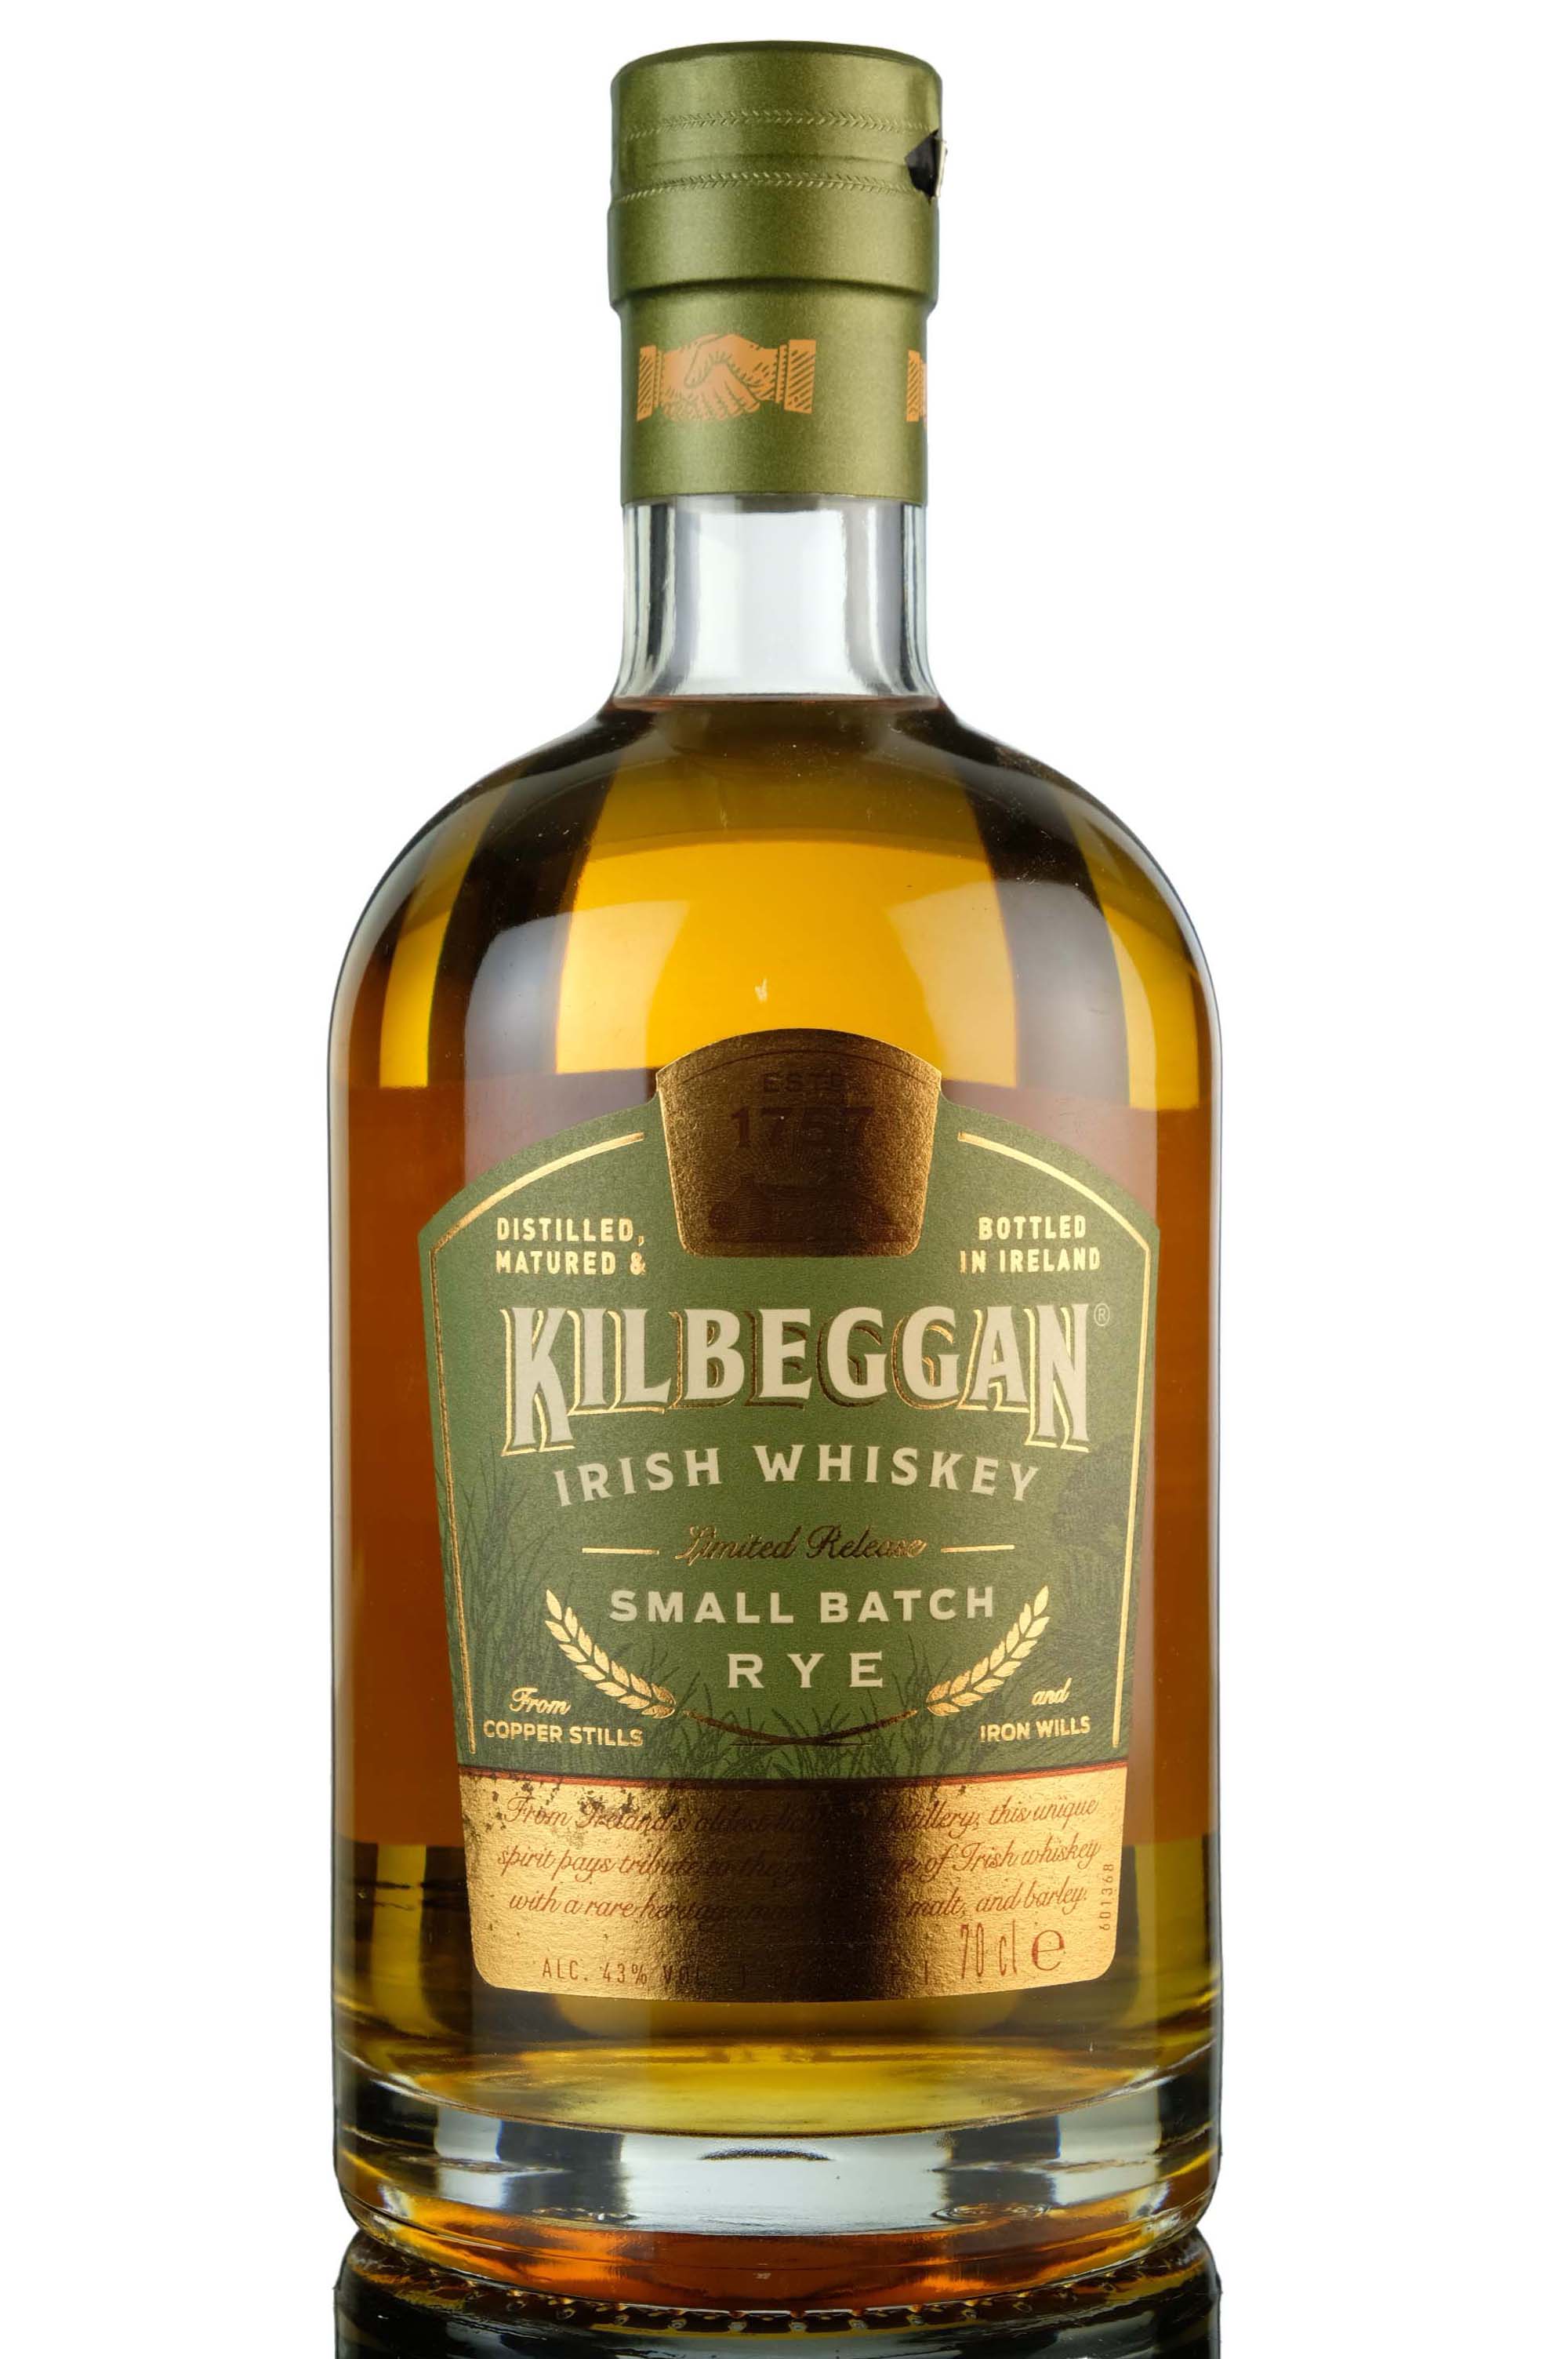 Kilbeggan Small Batch Rye - 2018 Release